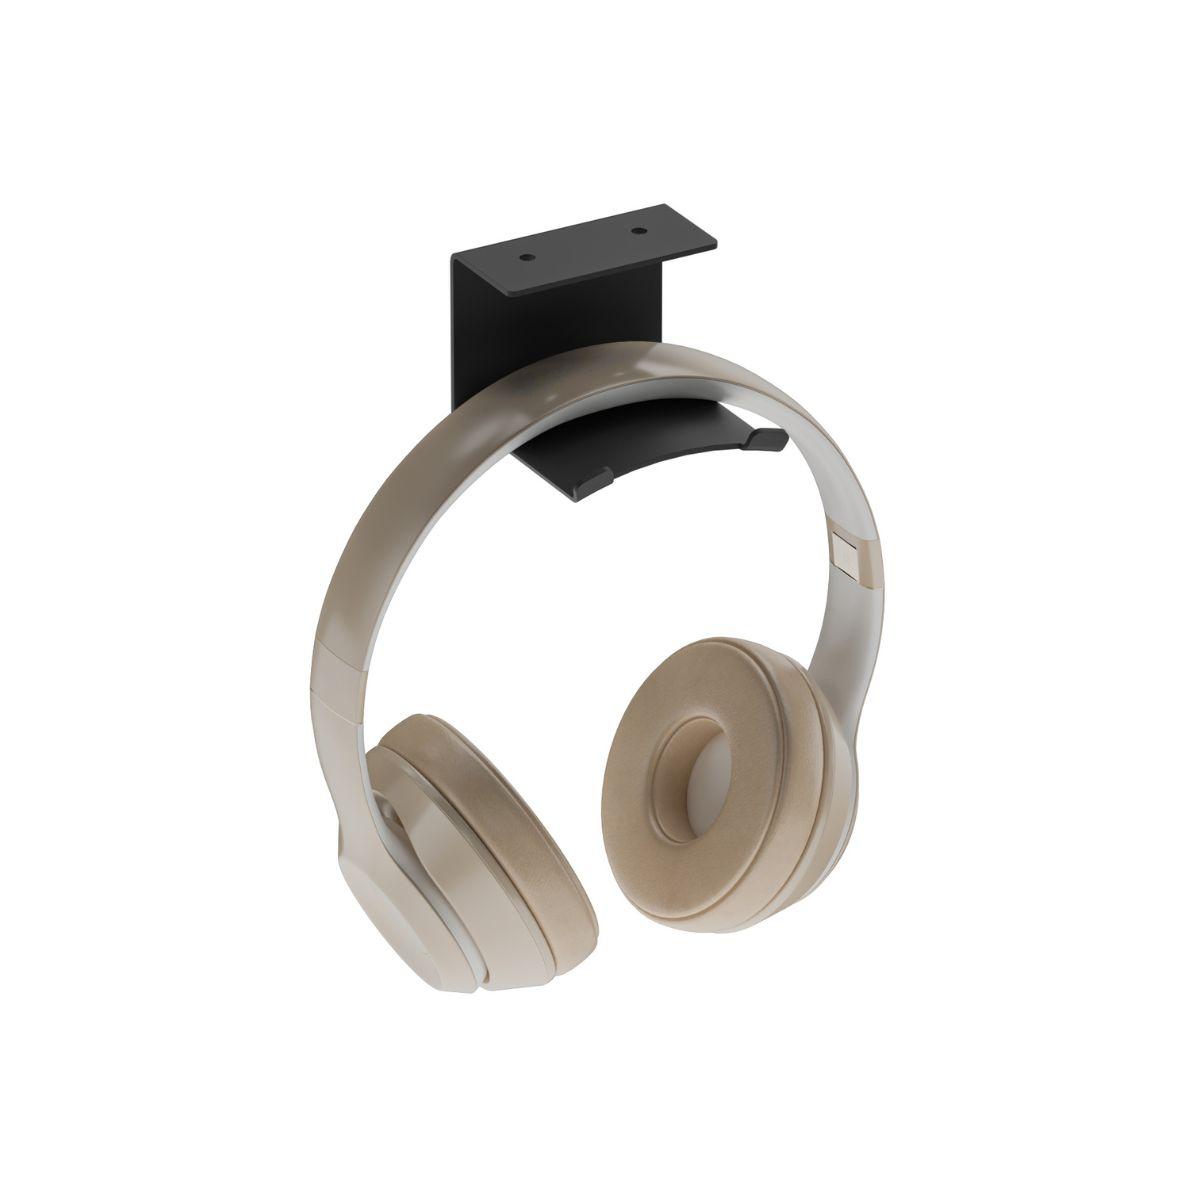 Μία μαύρη μεταλλική βιδωτή βάση ακουστικών από χάλυβα με μπεζ ακουστικά